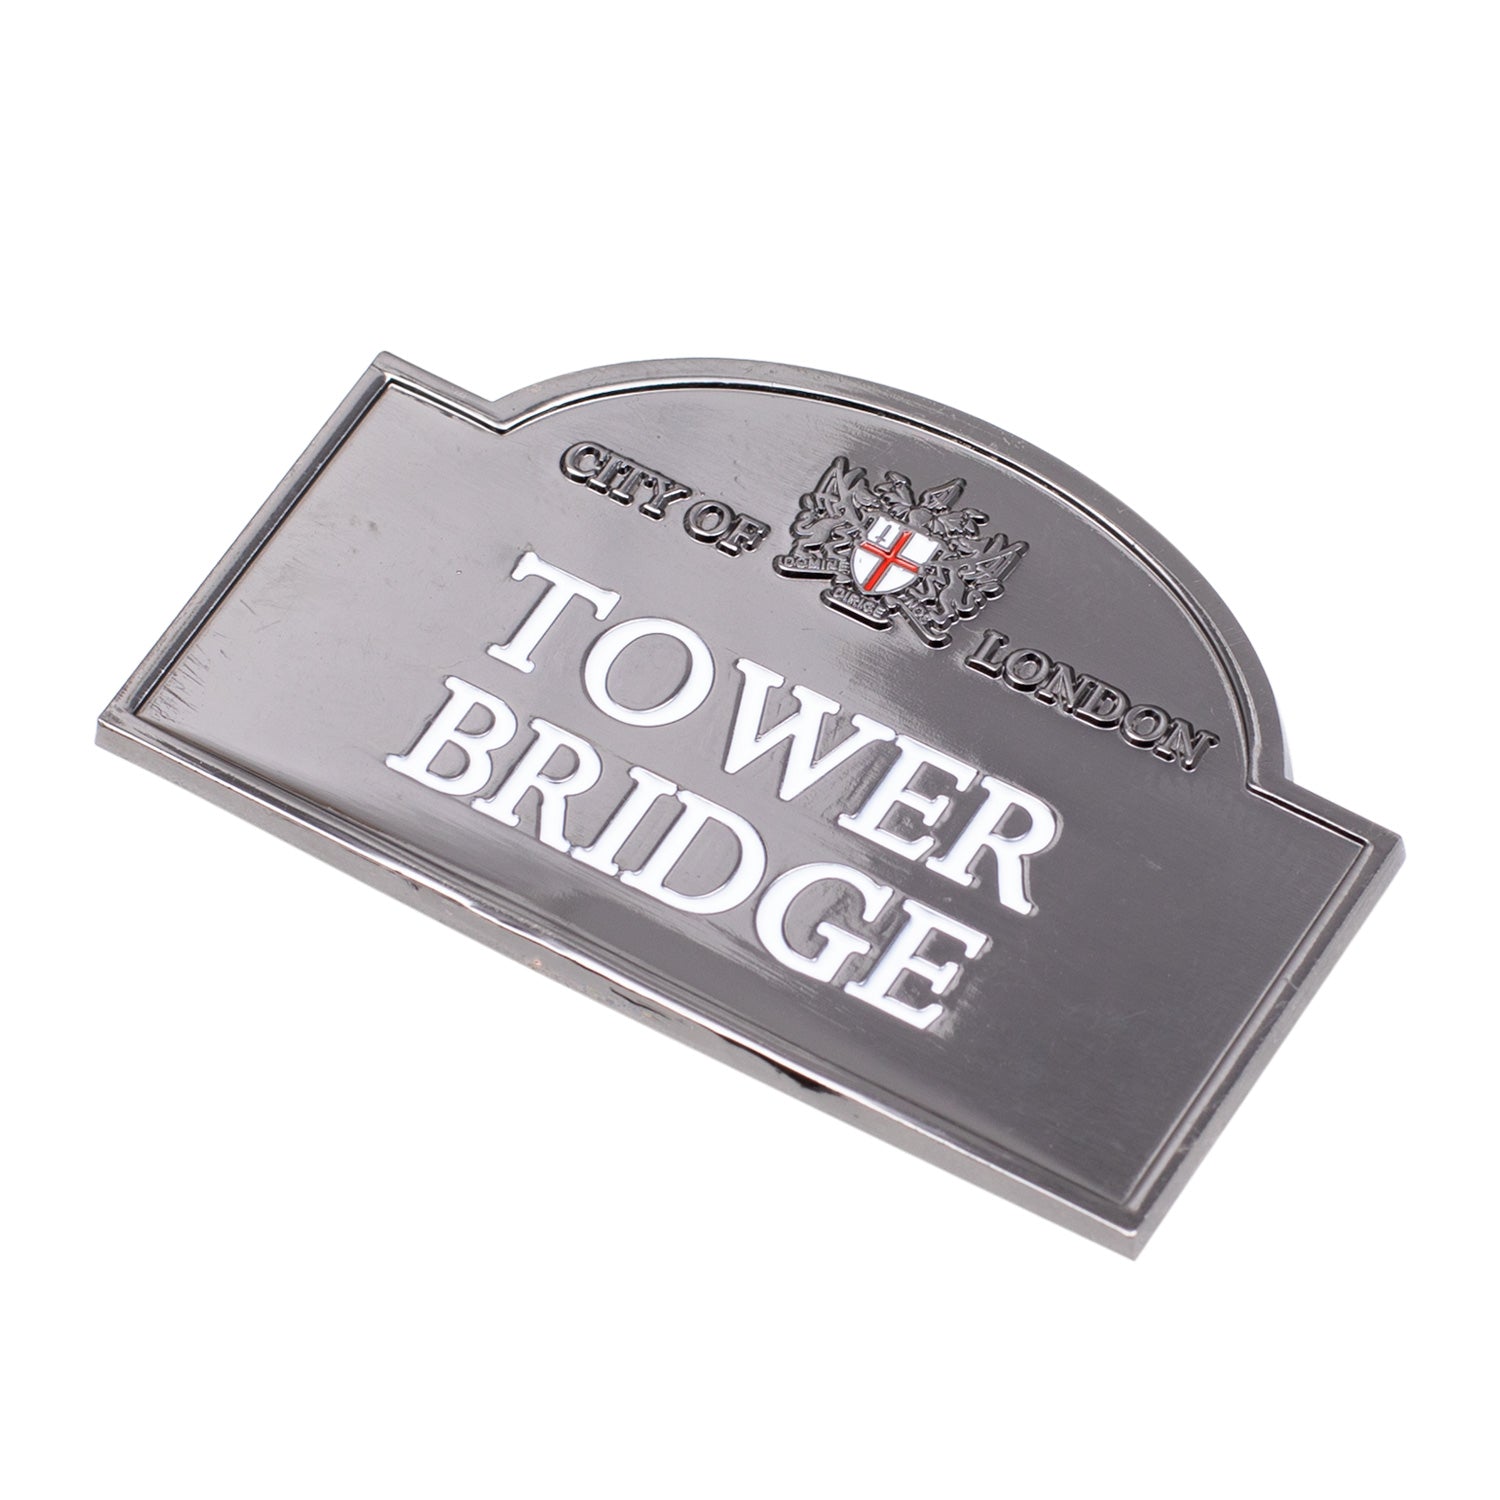 Tower Bridge Sign Chrome Fridge Magnet 3